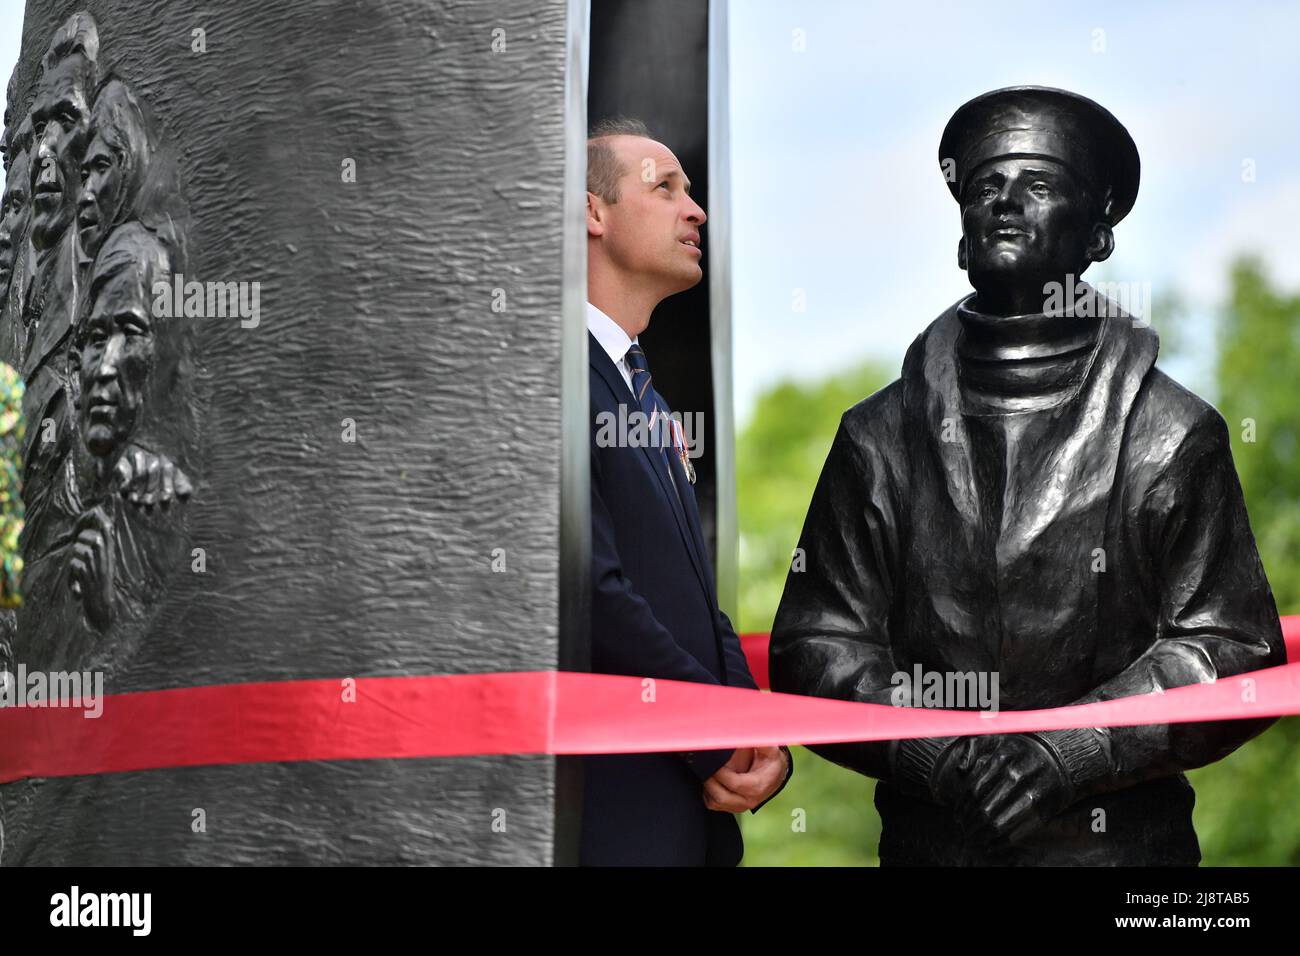 El Duque de Cambridge desvela un monumento conmemorativo a los submarinos en el Arboretum National Memorial en Staffordshire. Fecha de la foto: Miércoles 18 de mayo de 2022. Foto de stock